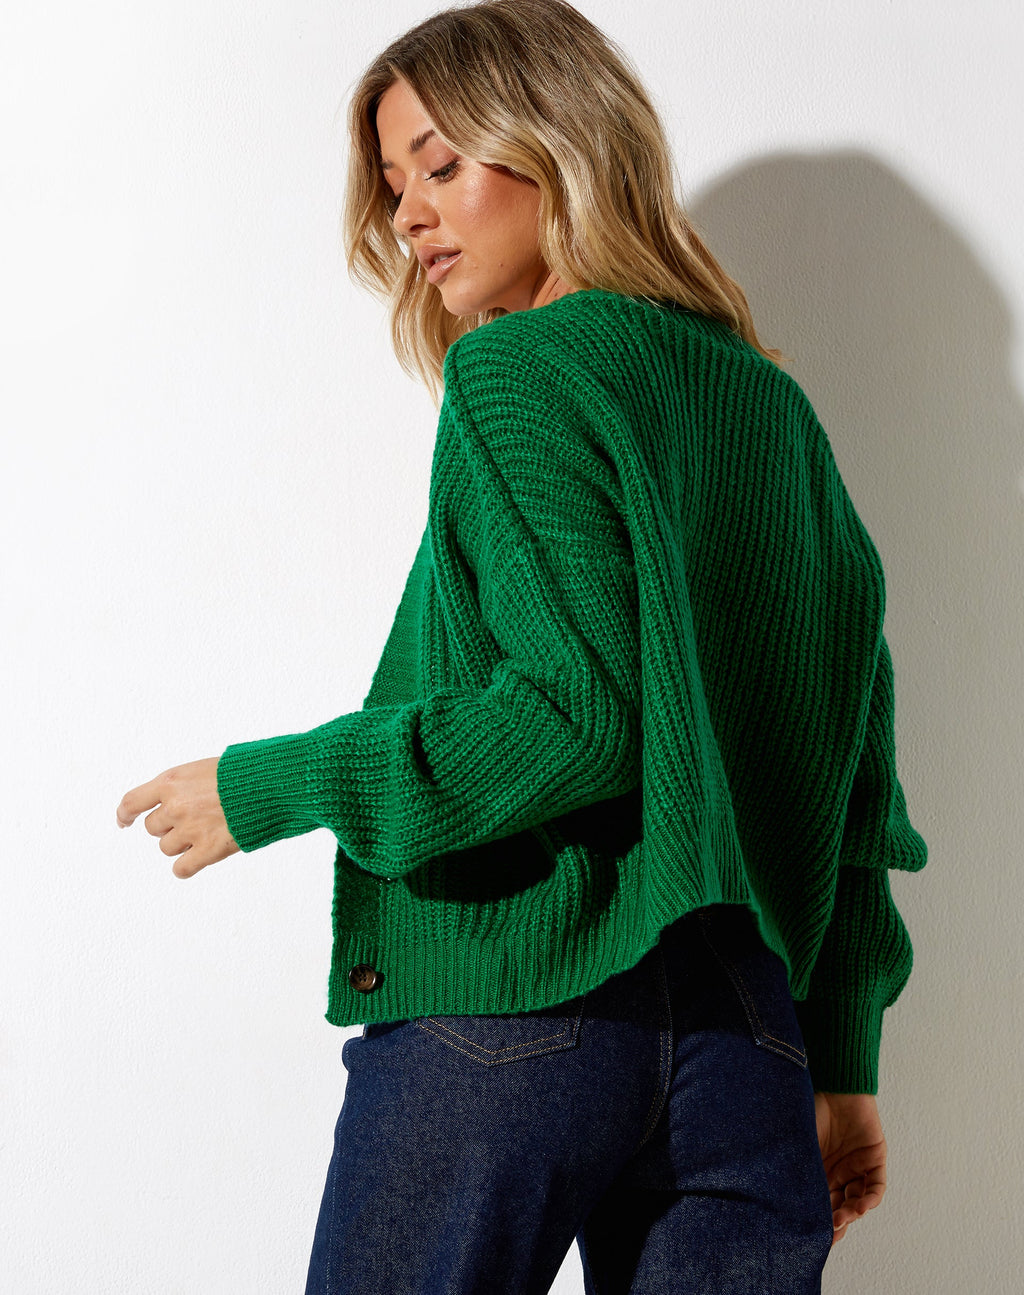 Faya Cardi in Knit Green